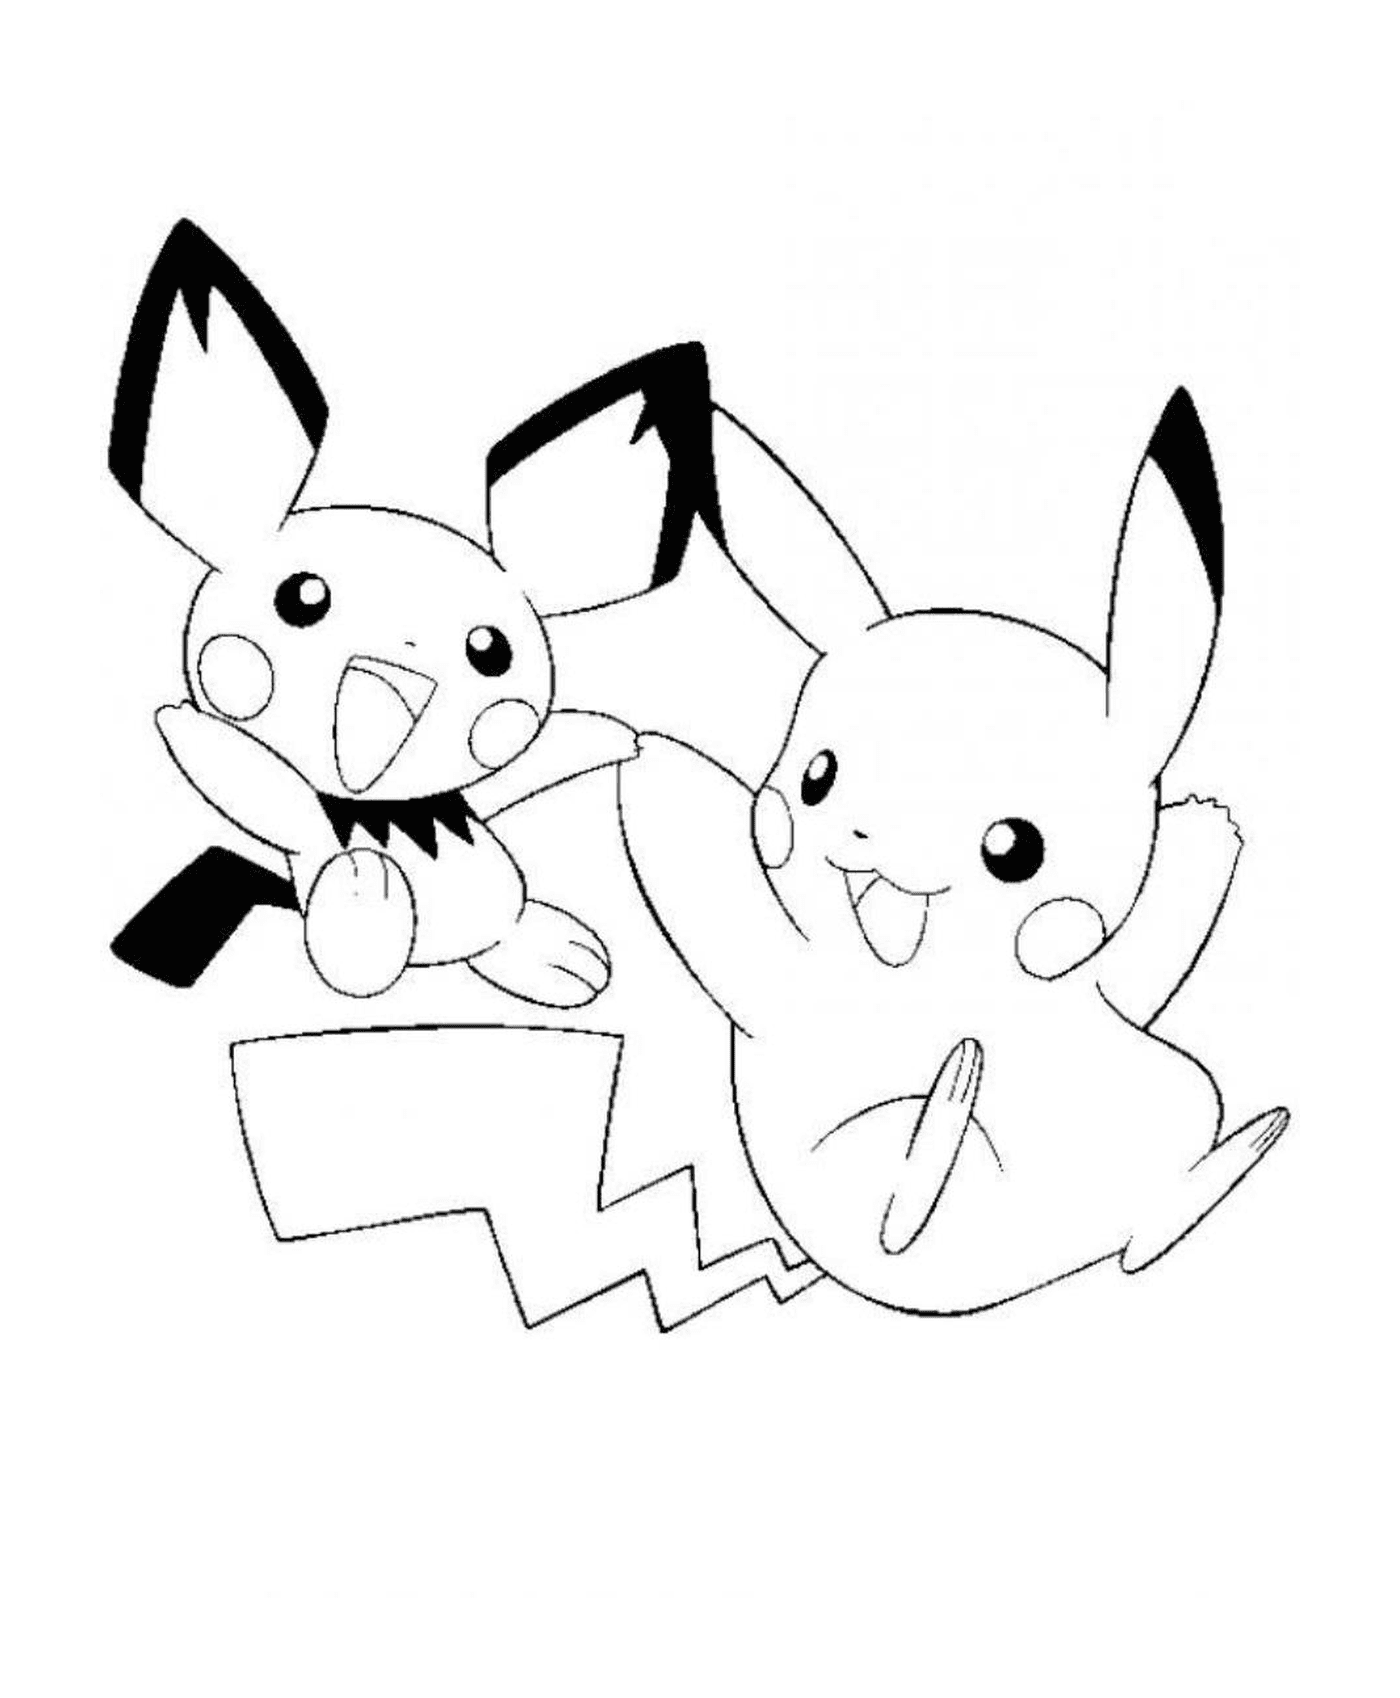  Dois Pikachus se encontram 